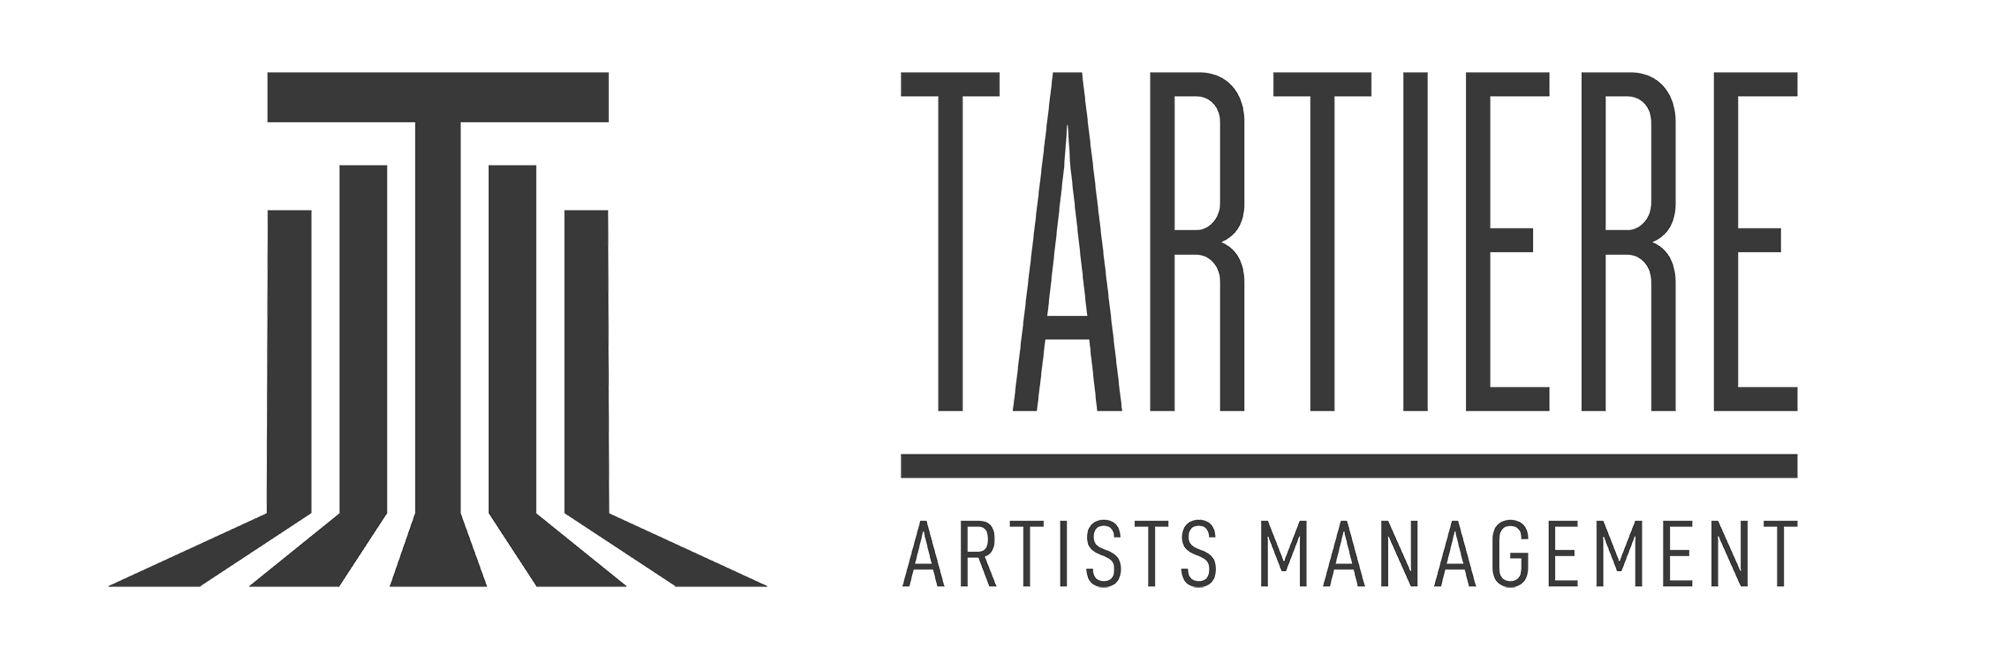 Tartiere Artists Management